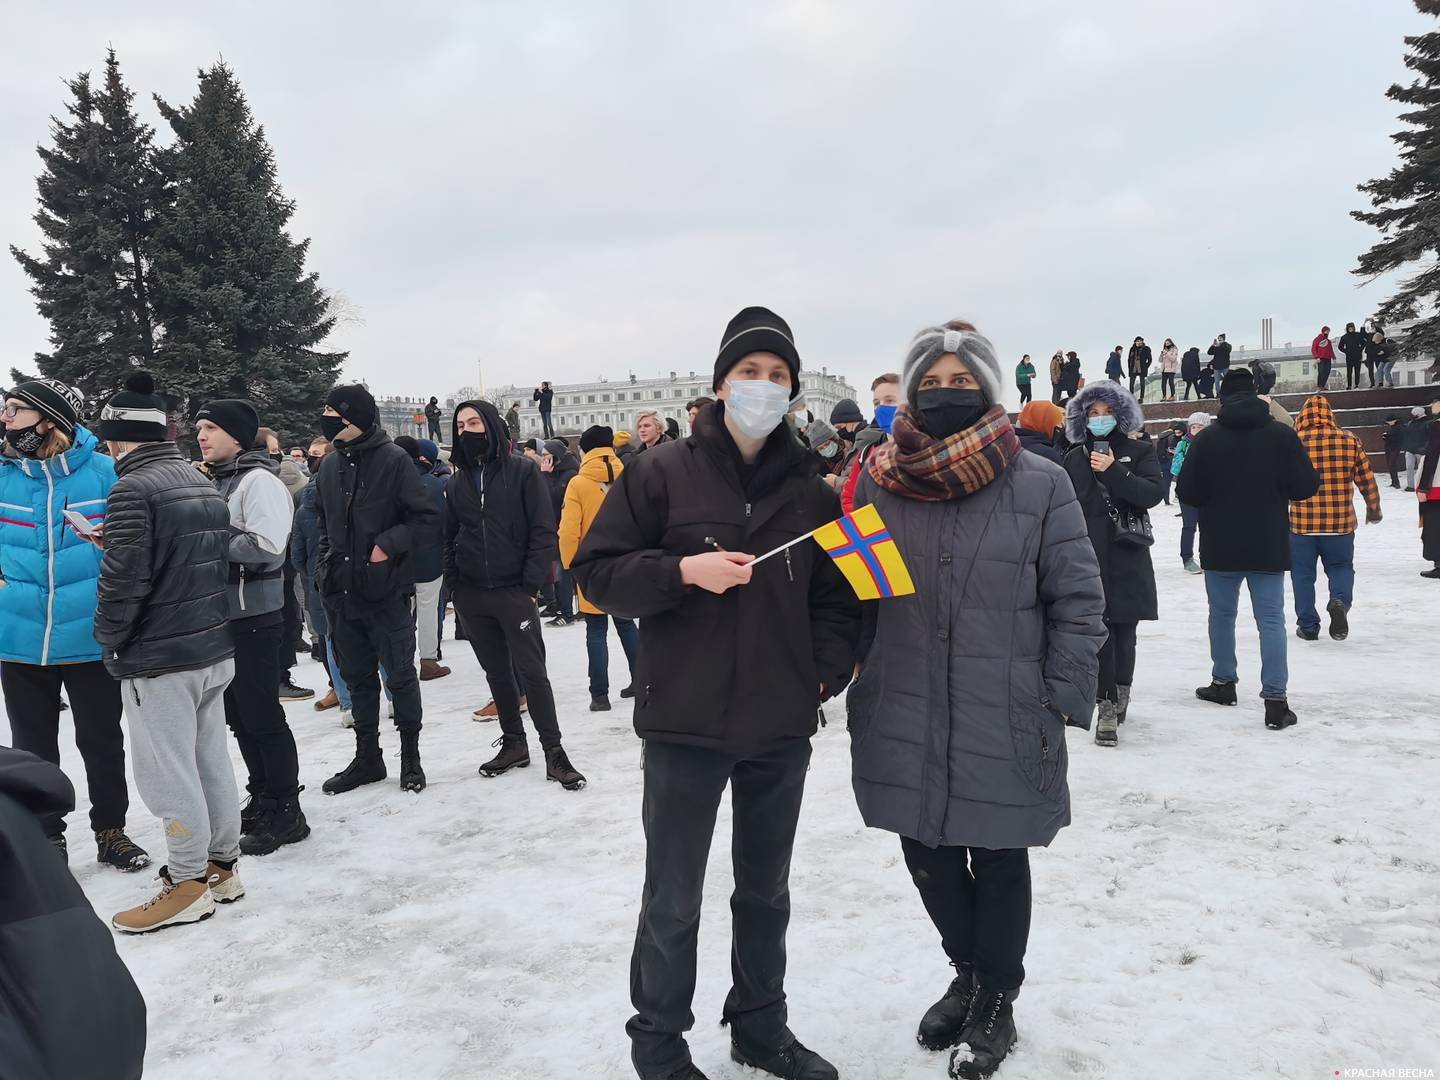 Сторонники отделения Санкт-Петербурга и Ленобласти от России позируют с флагом Ингерманландии в руках